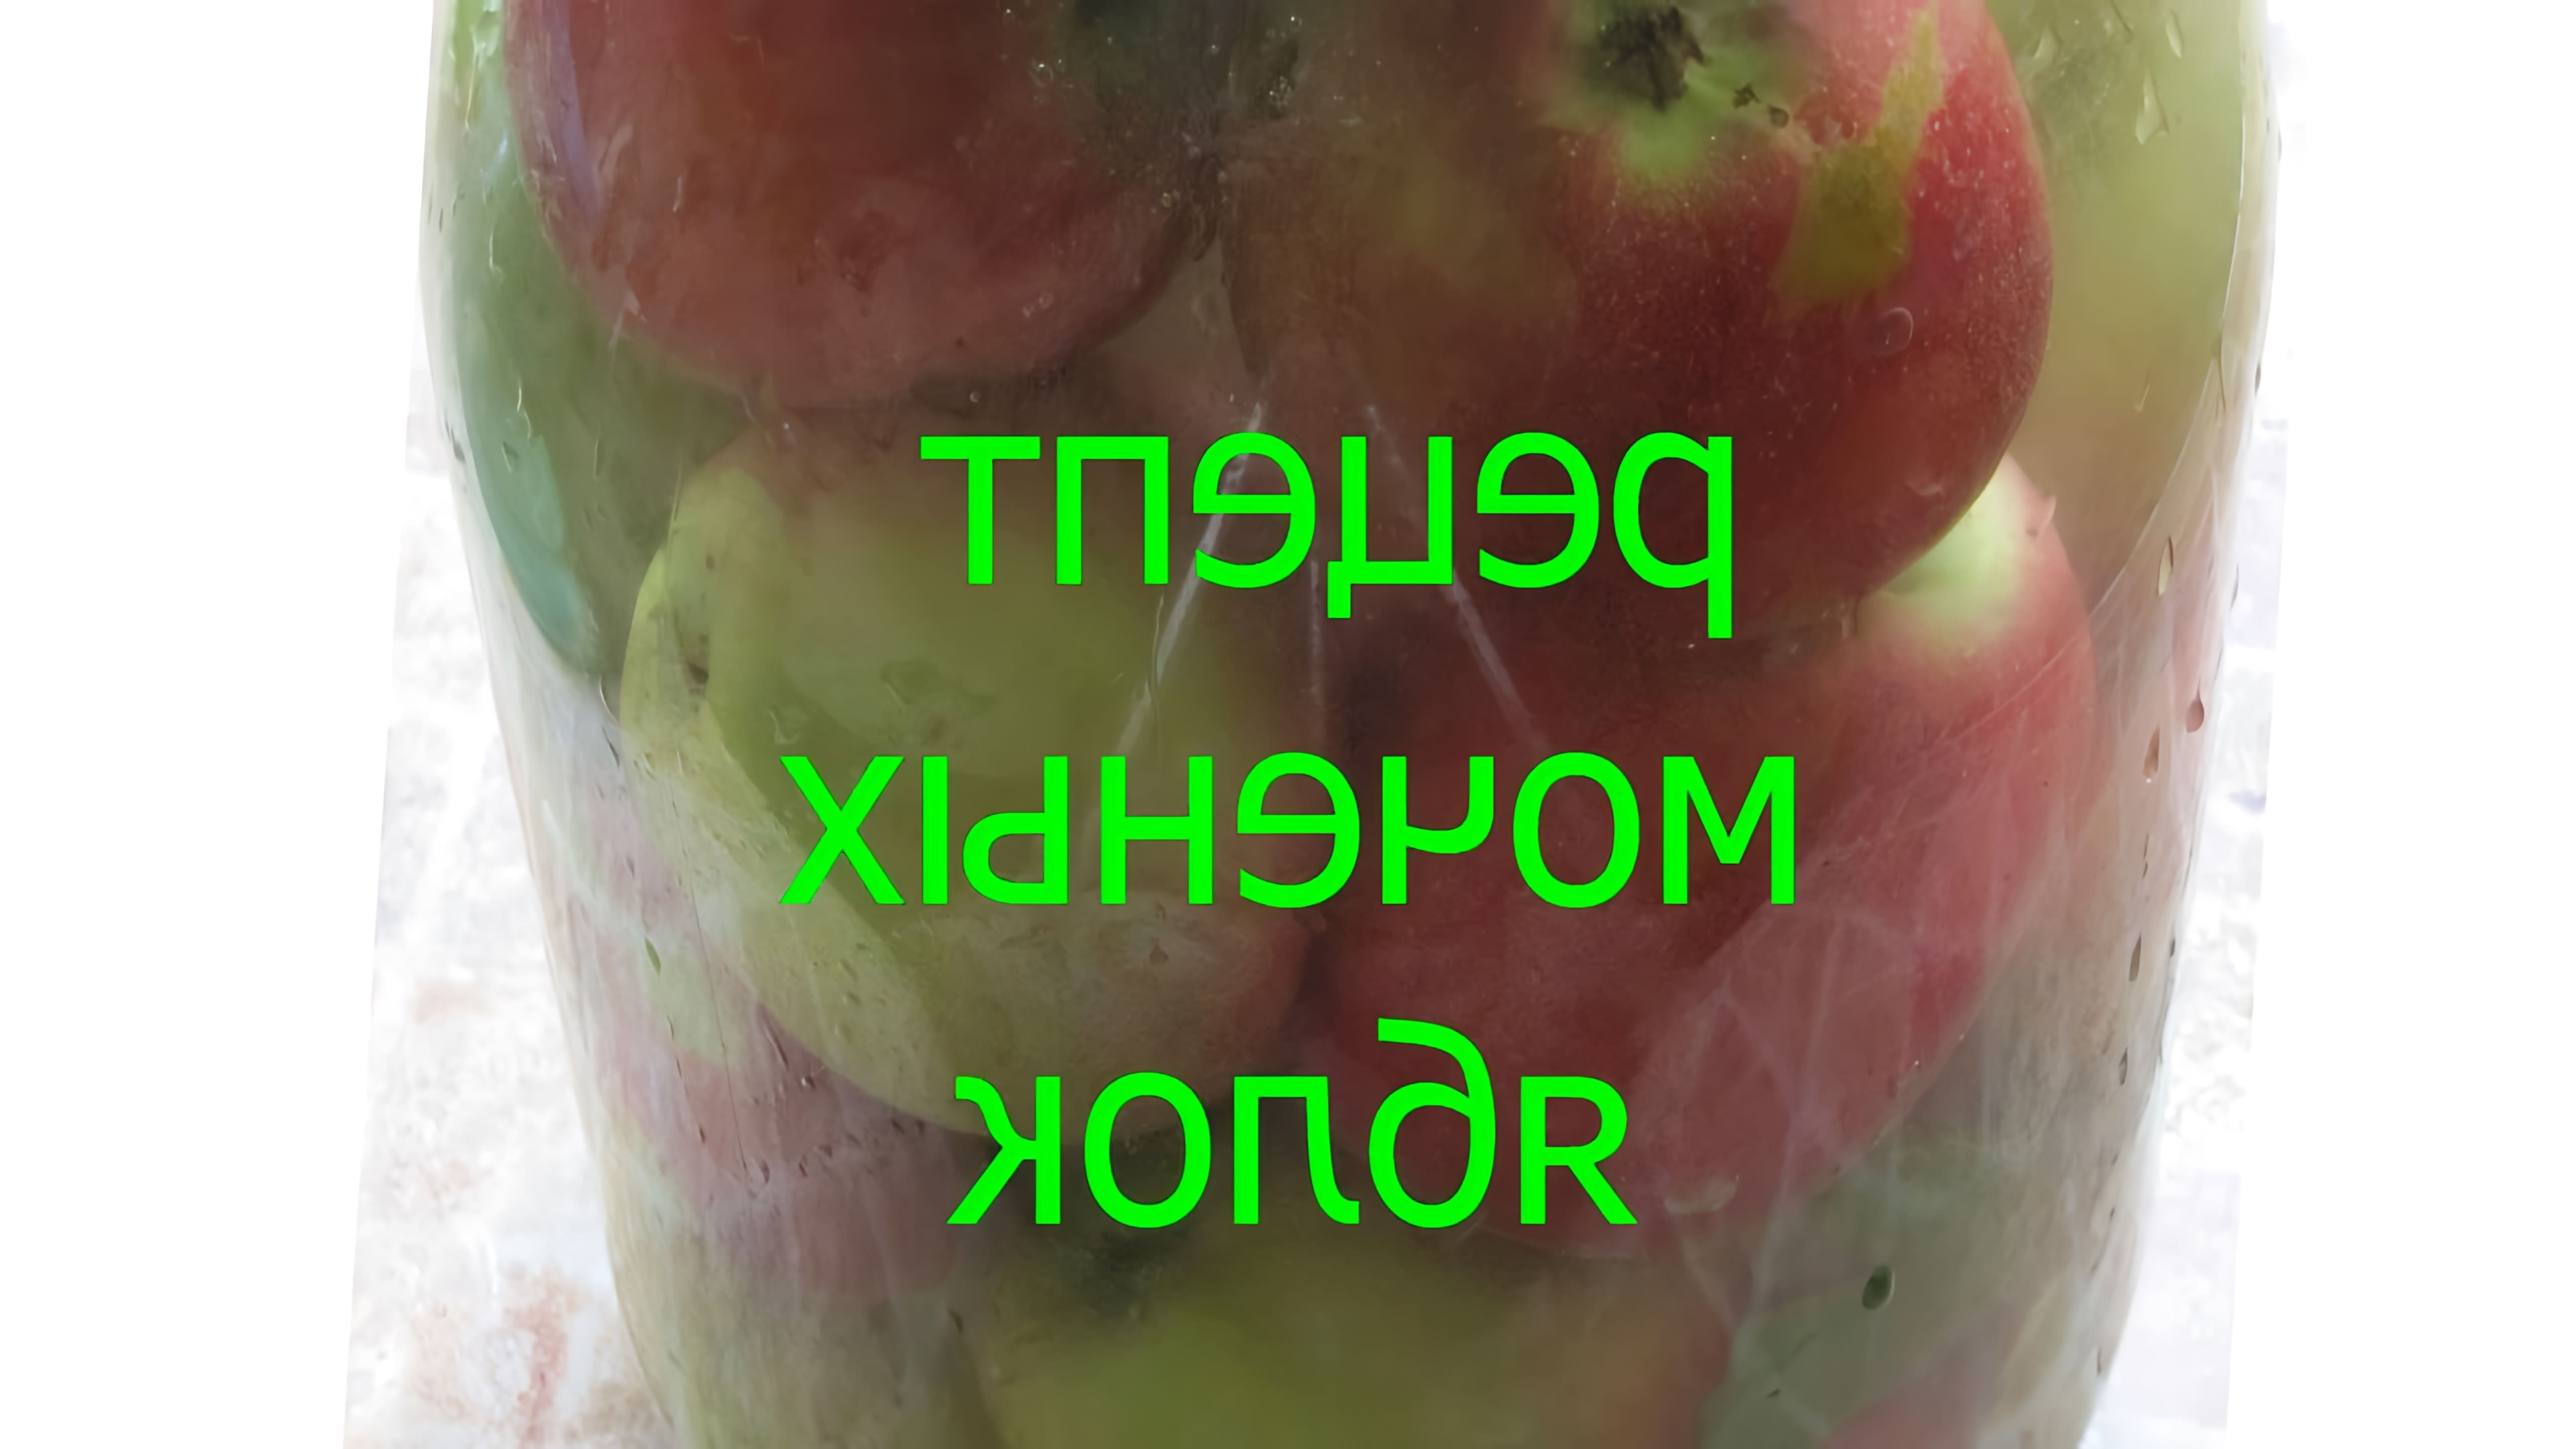 Моченые яблоки - это традиционный русский способ консервирования яблок, который позволяет сохранить их свежесть и вкус на долгое время